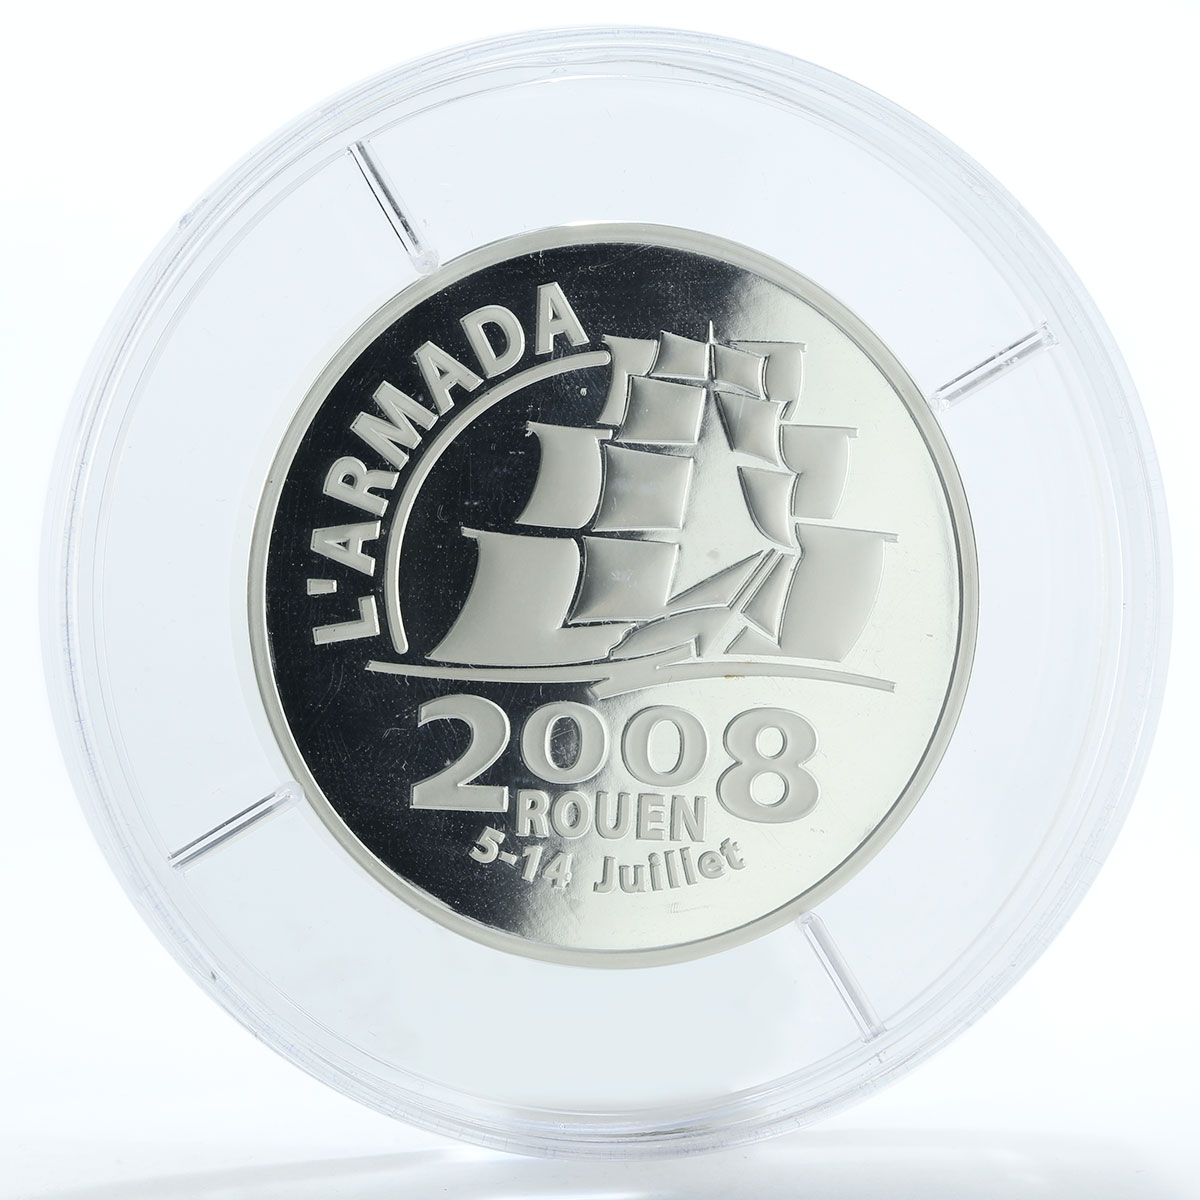 France 20 euro Rouen Armada proof silver coin 2008